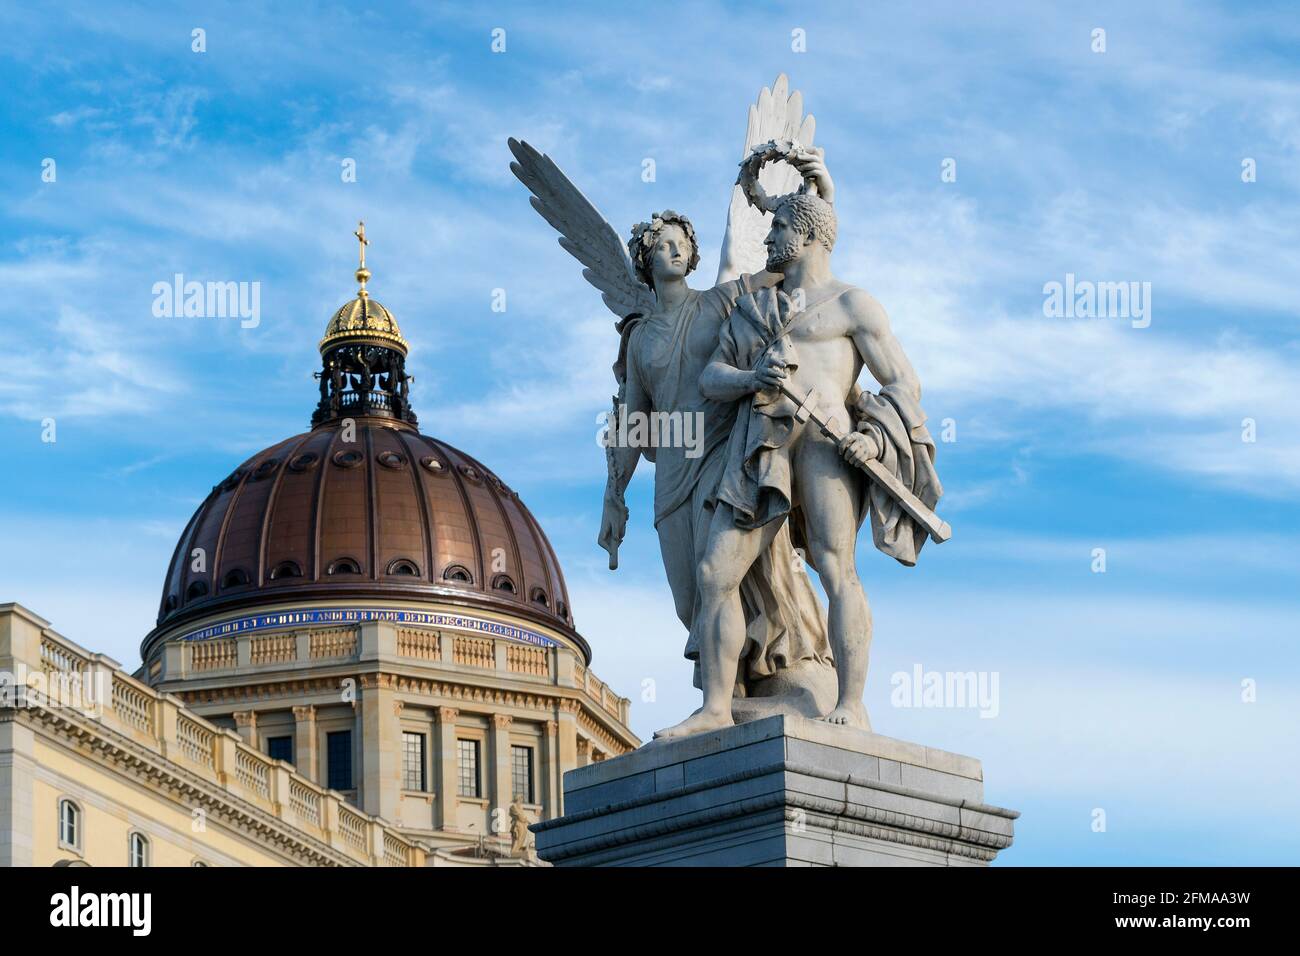 Berlín, centro histórico, palacio de la ciudad de Berlín, cúpula, primer plano figuras puente del palacio: 'Nike corona al ganador' Fotografía stock - Alamy